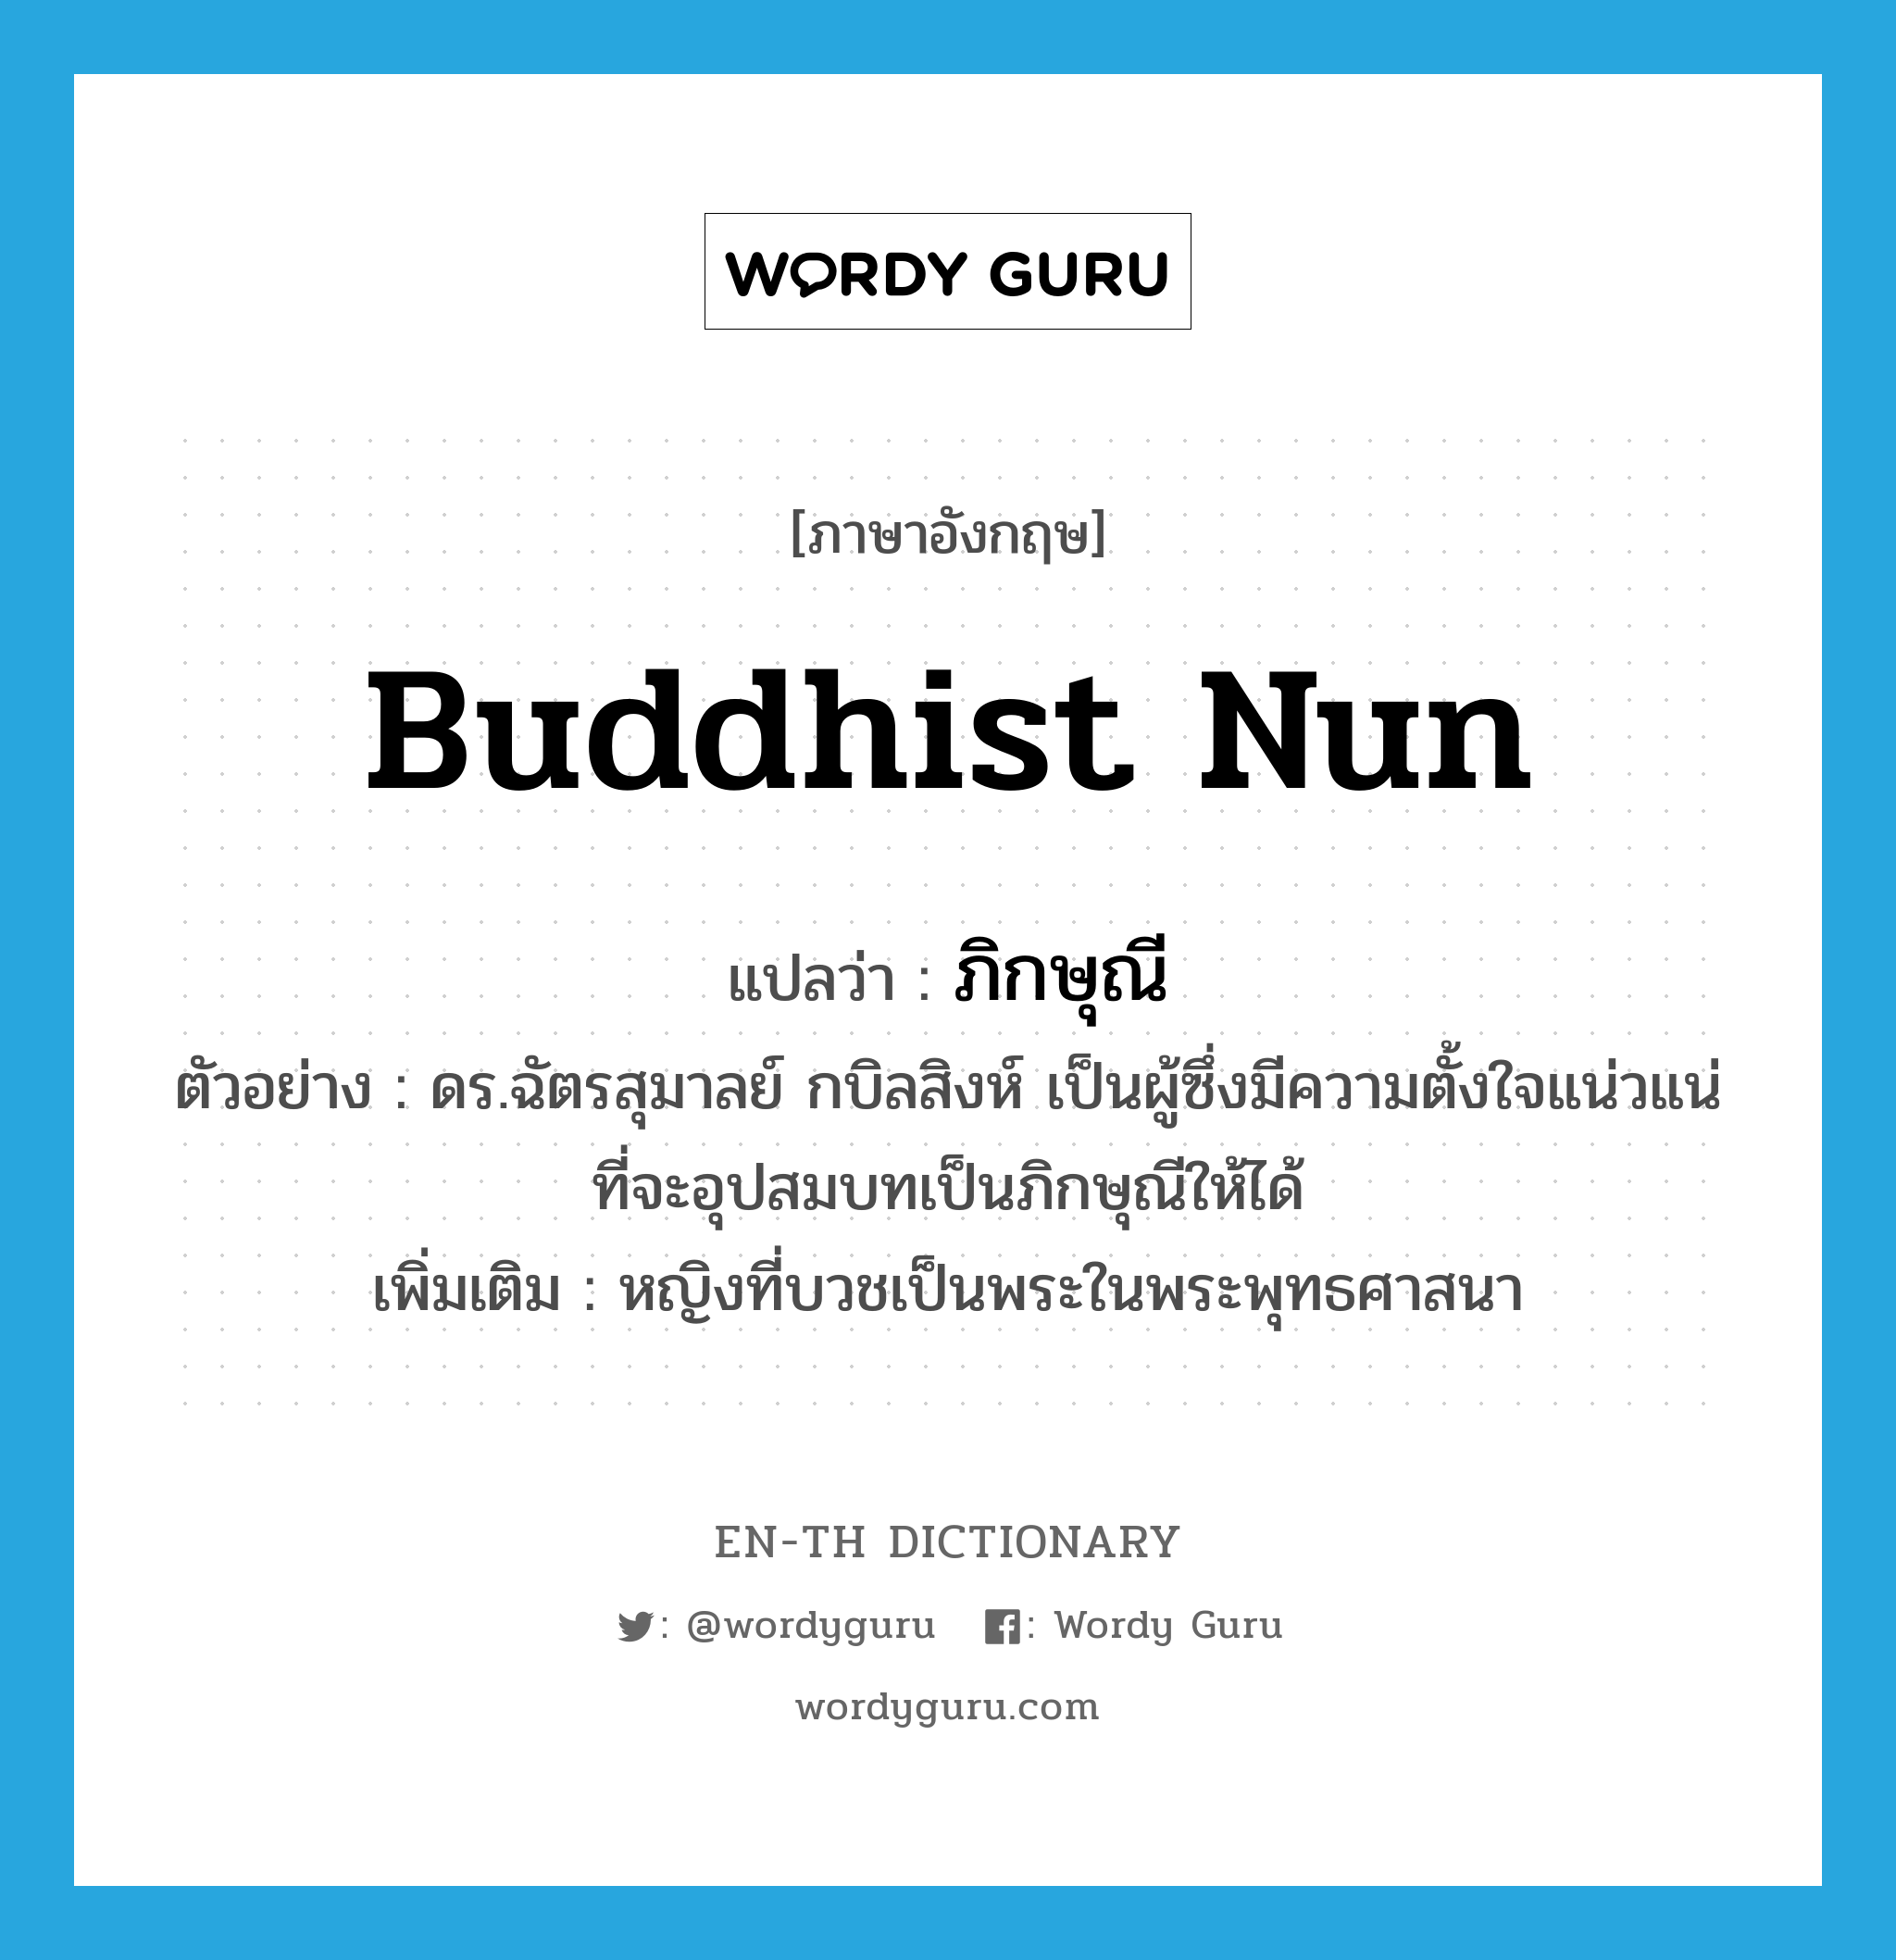 ภิกษุณี ภาษาอังกฤษ?, คำศัพท์ภาษาอังกฤษ ภิกษุณี แปลว่า Buddhist nun ประเภท N ตัวอย่าง ดร.ฉัตรสุมาลย์ กบิลสิงห์ เป็นผู้ซึ่งมีความตั้งใจแน่วแน่ที่จะอุปสมบทเป็นภิกษุณีให้ได้ เพิ่มเติม หญิงที่บวชเป็นพระในพระพุทธศาสนา หมวด N